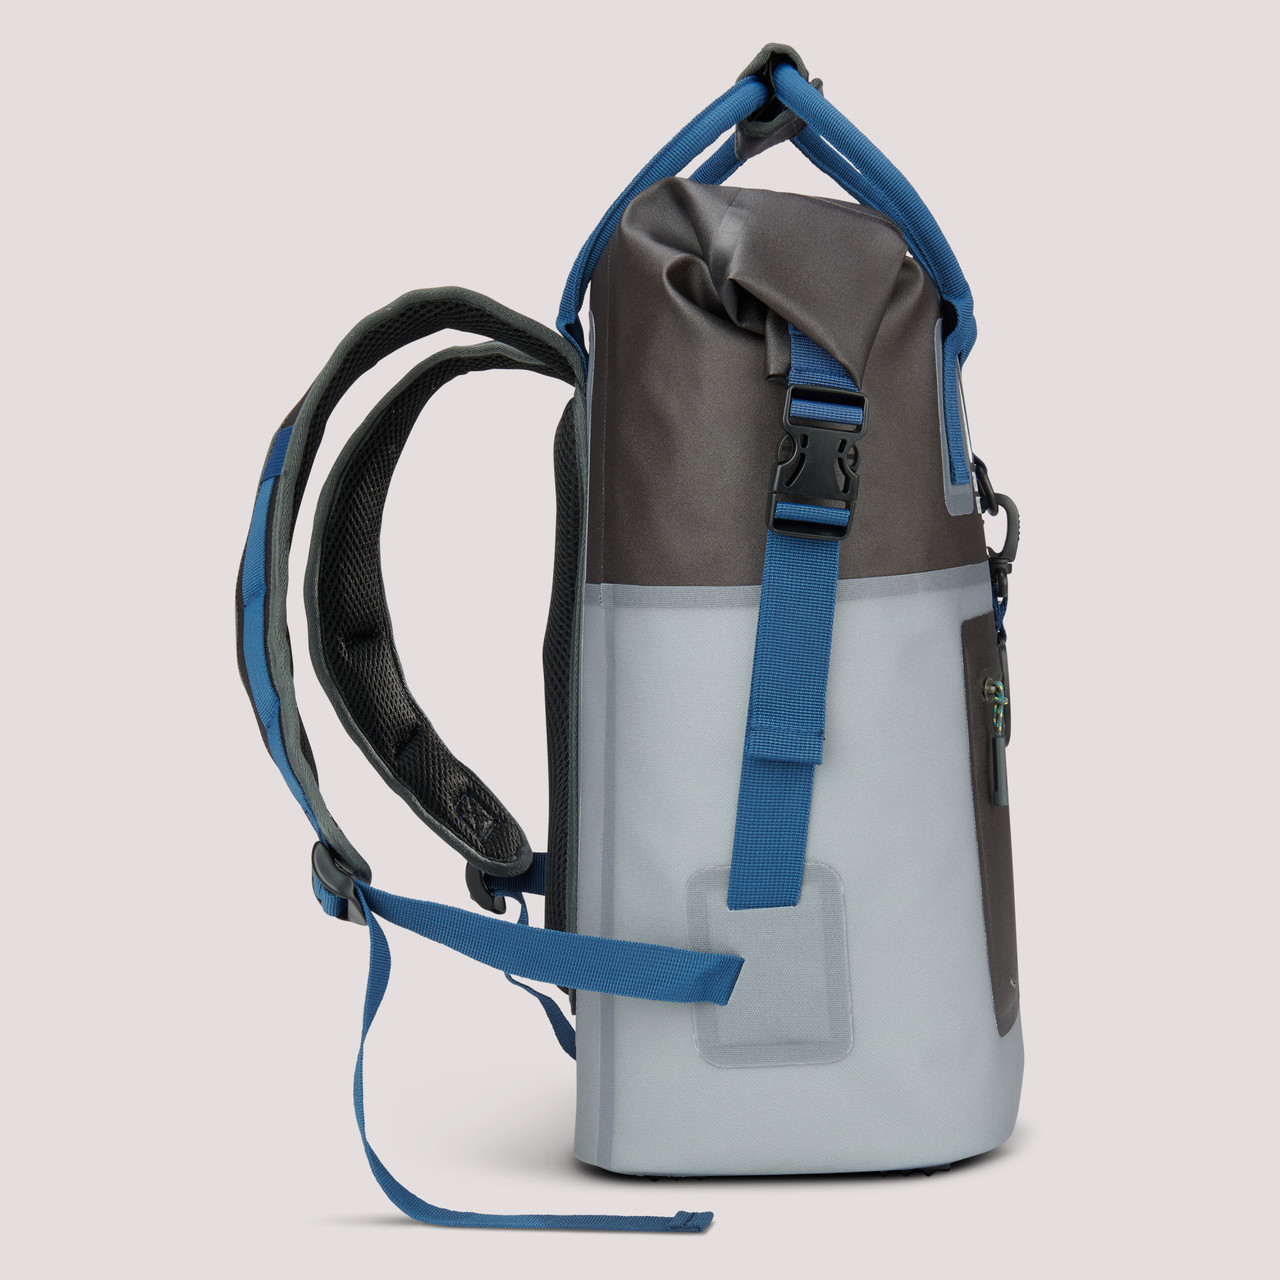 Cooler Backpack Blue 20L